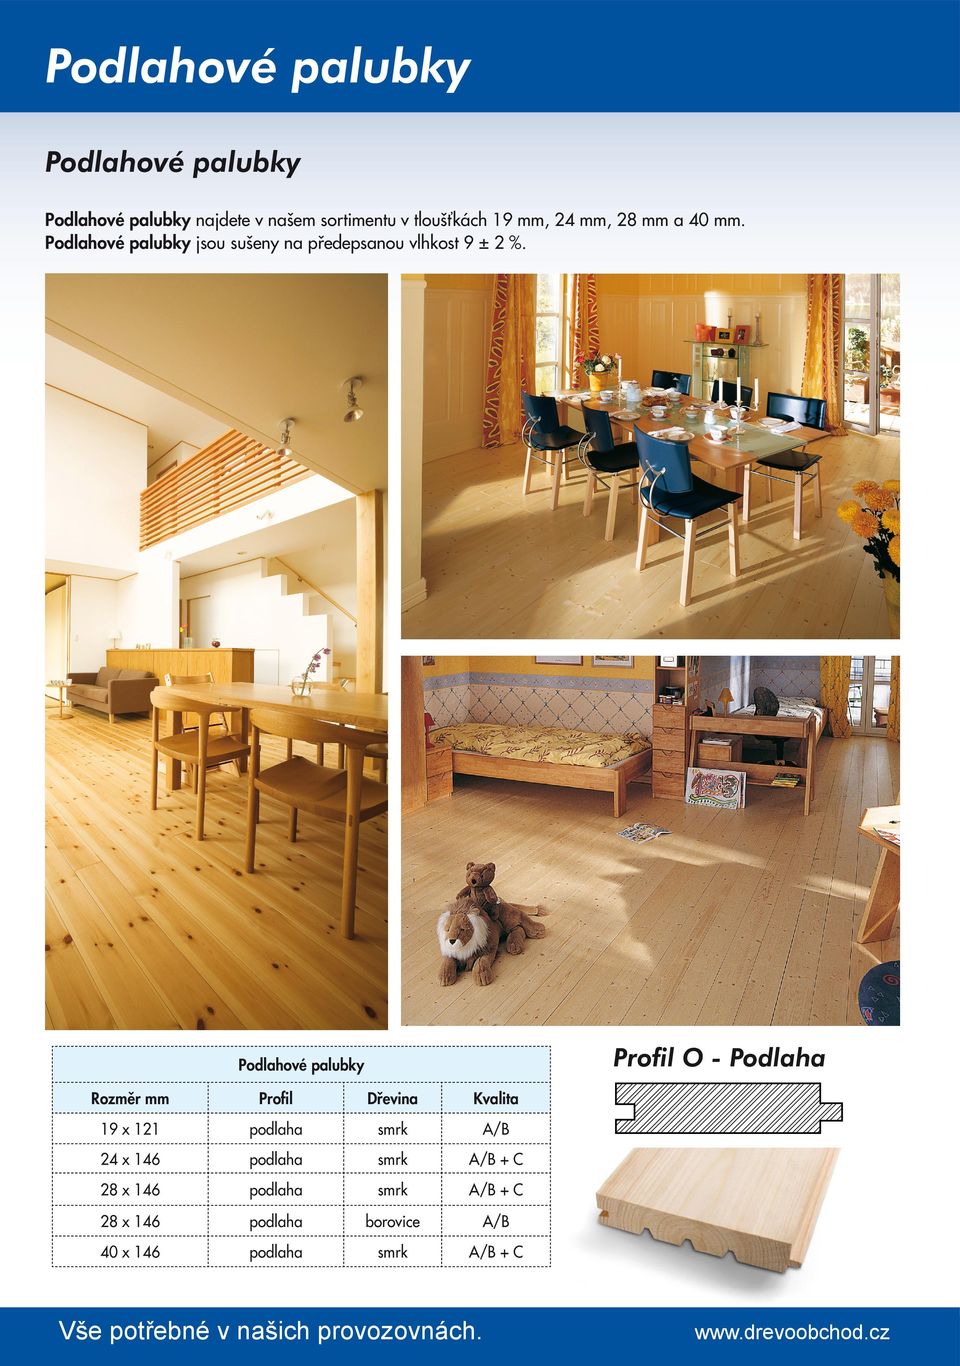 Profil O - Podlaha Podlahové palubky Rozměr mm Profil Dřevina Kvalita 19 x 121 A/B 24 x 146